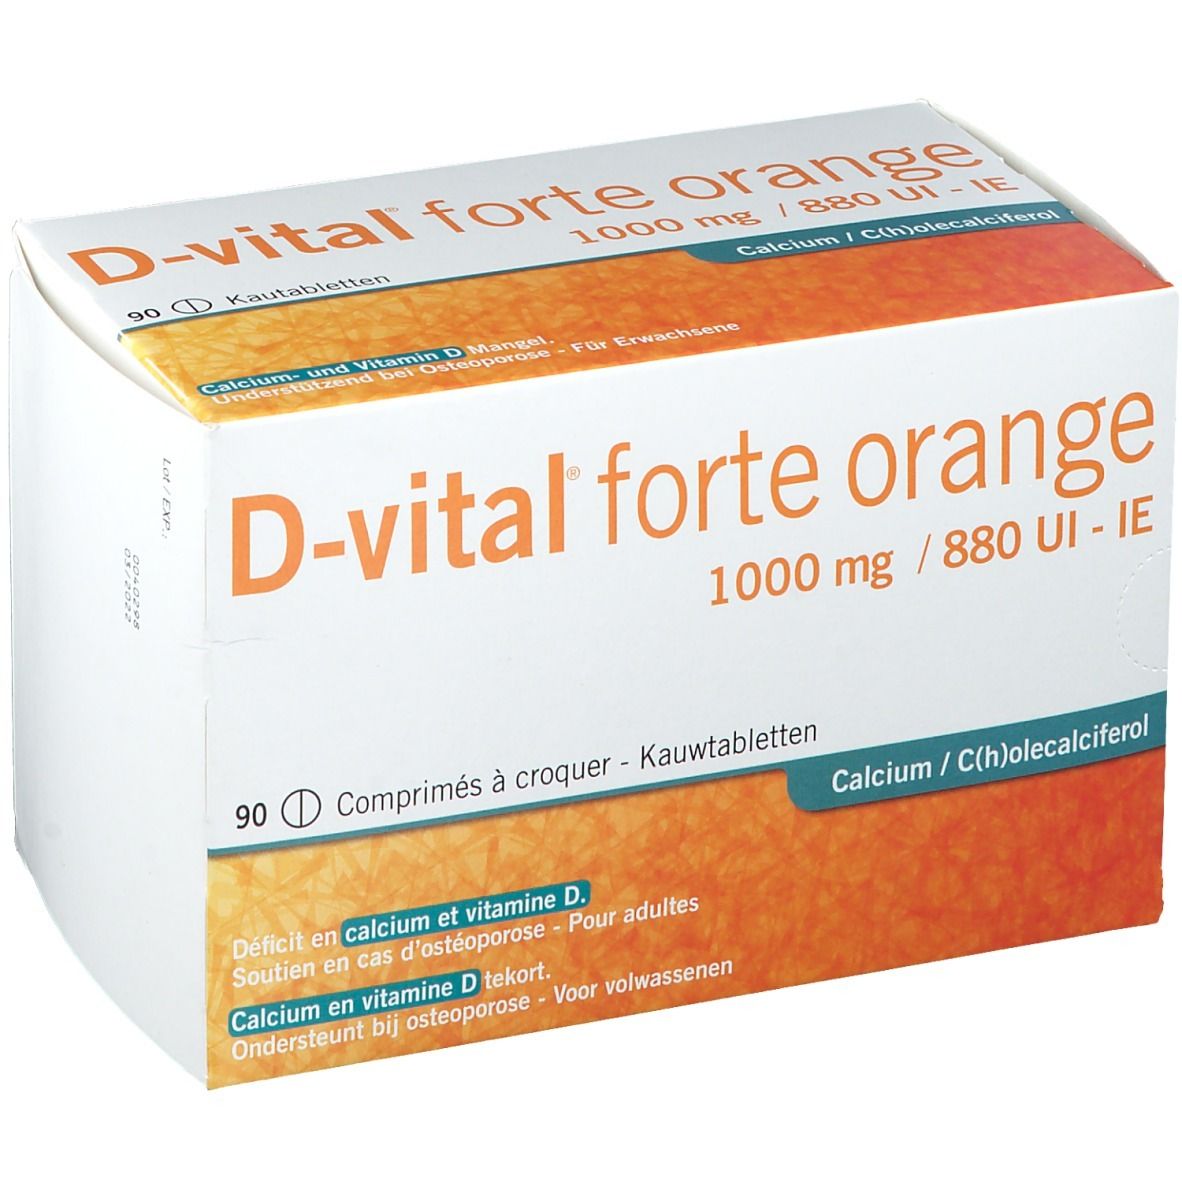 D-vital Forte Sinaas 1000mg/880IE Calcium